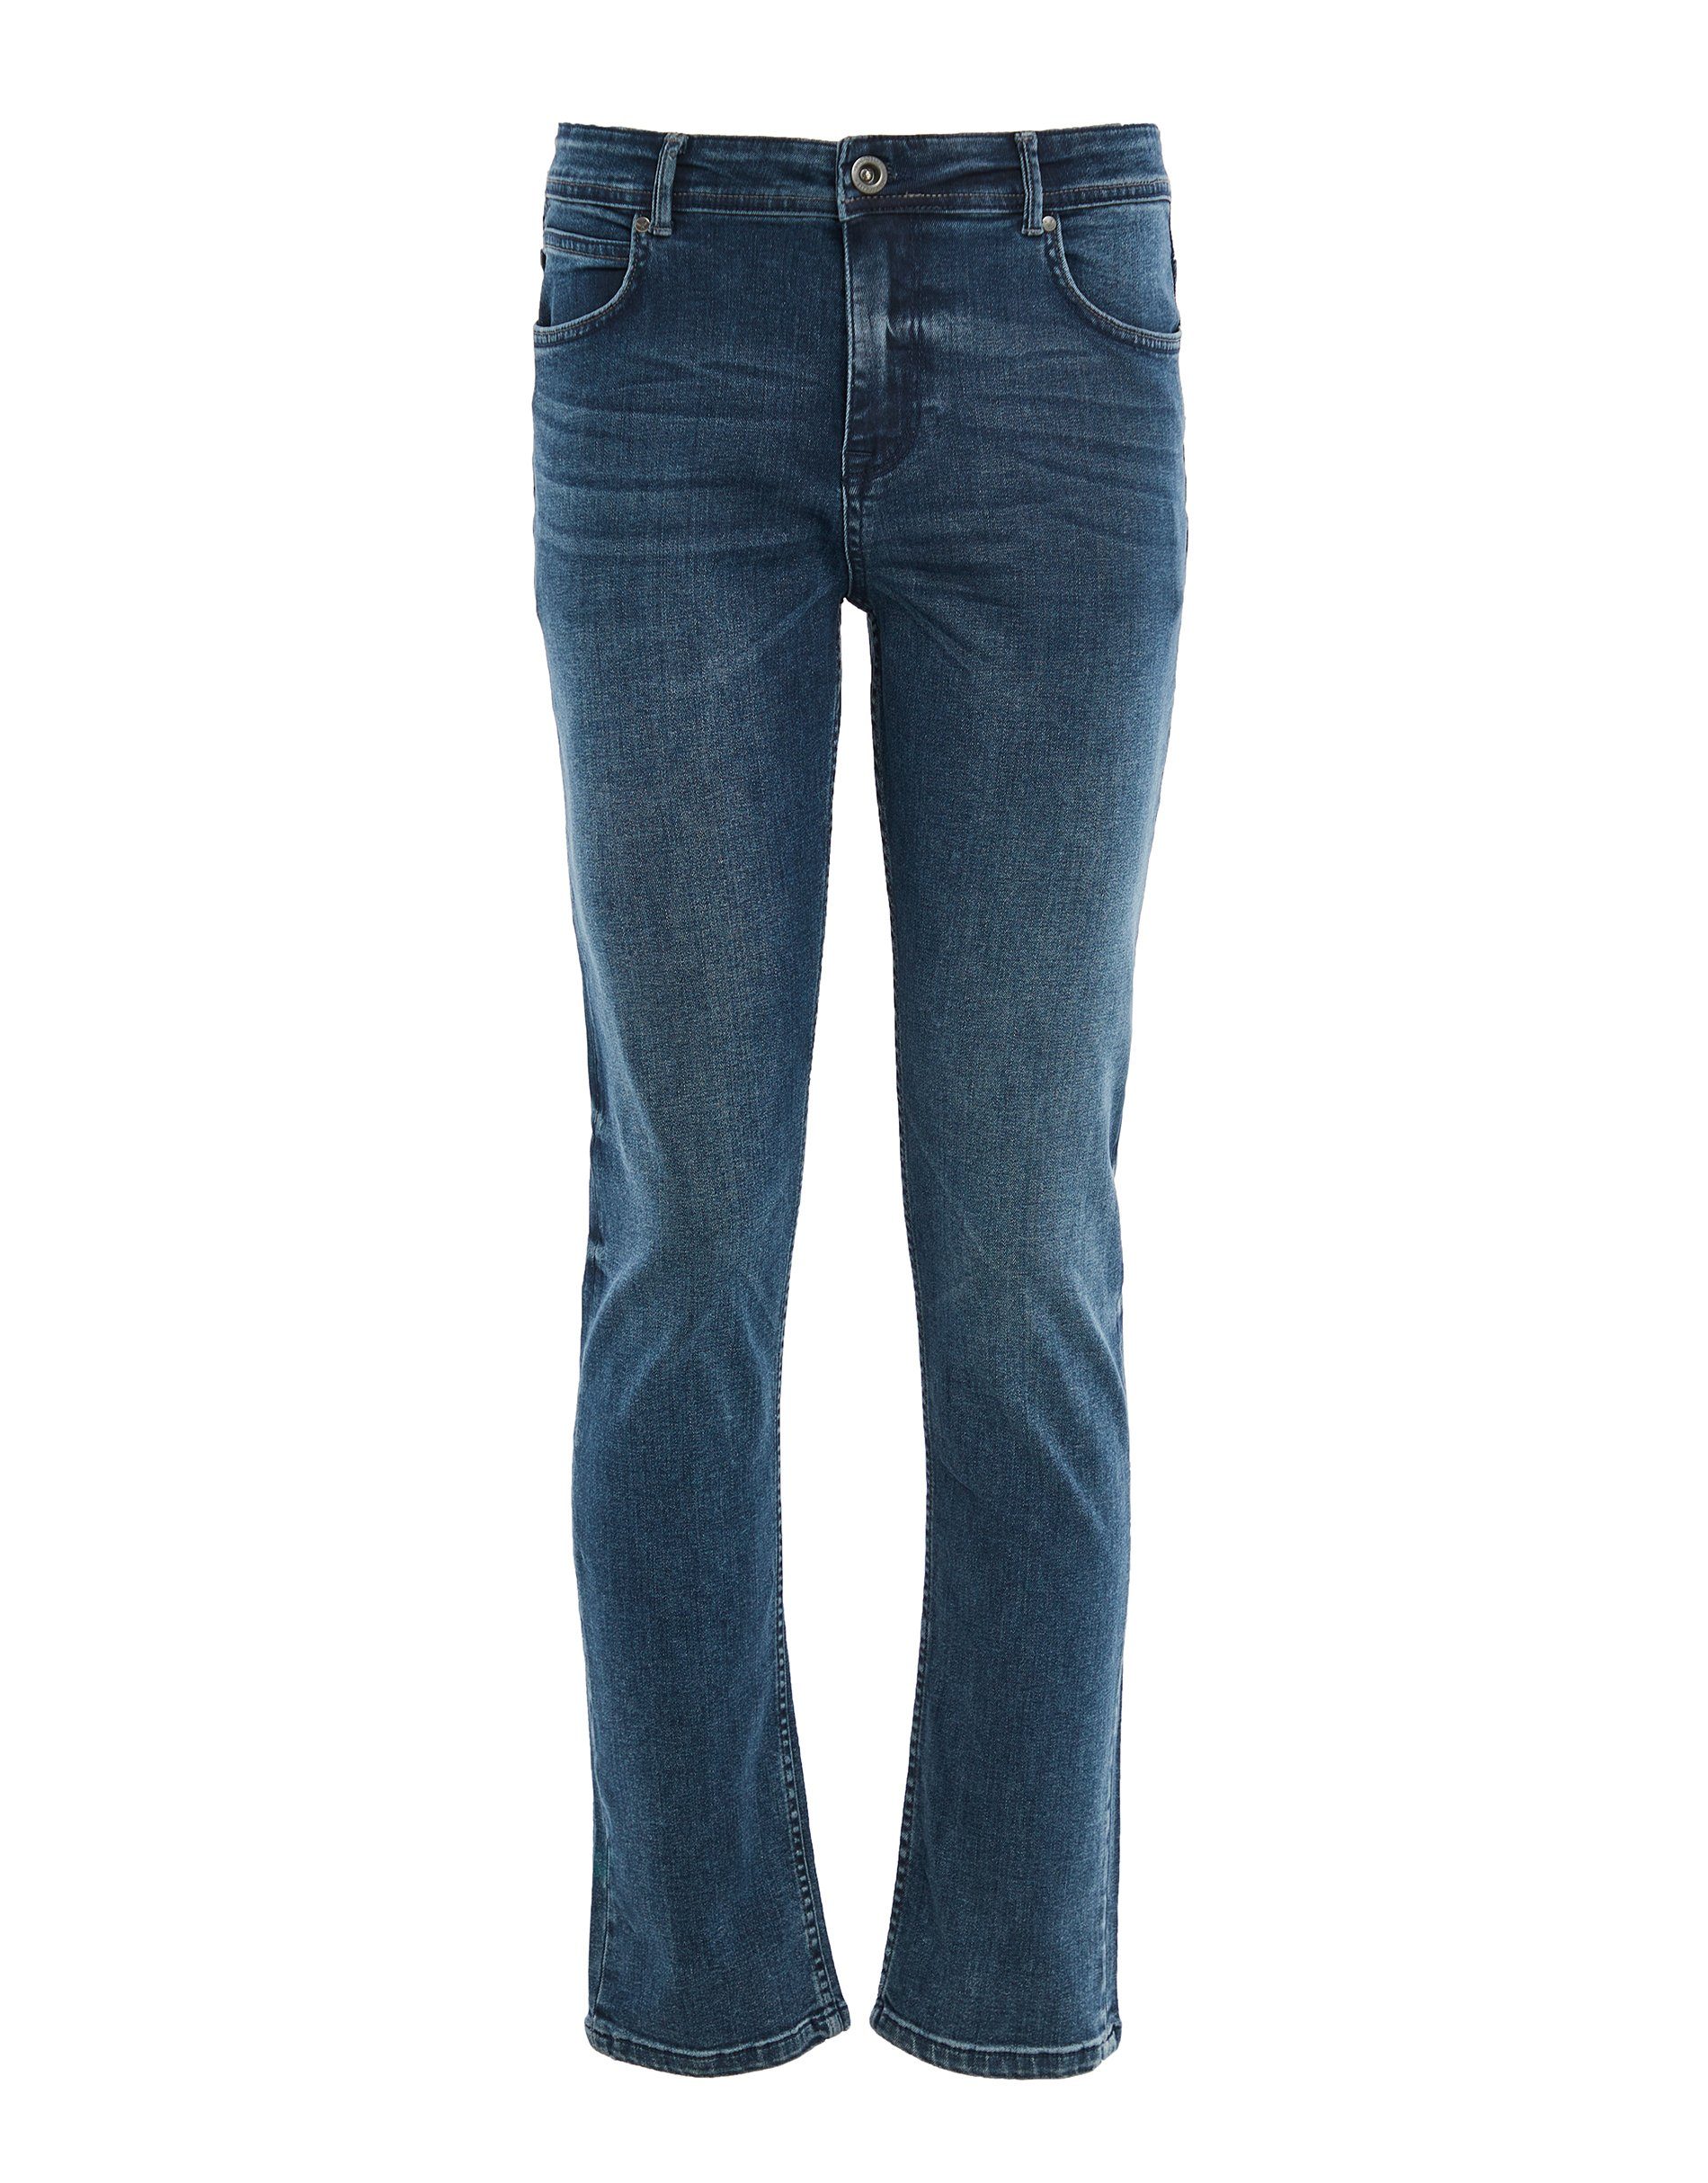 Threadbare Pkt 5-Pocket-Jeans 5 mid blue Slim THBLancaster Fit